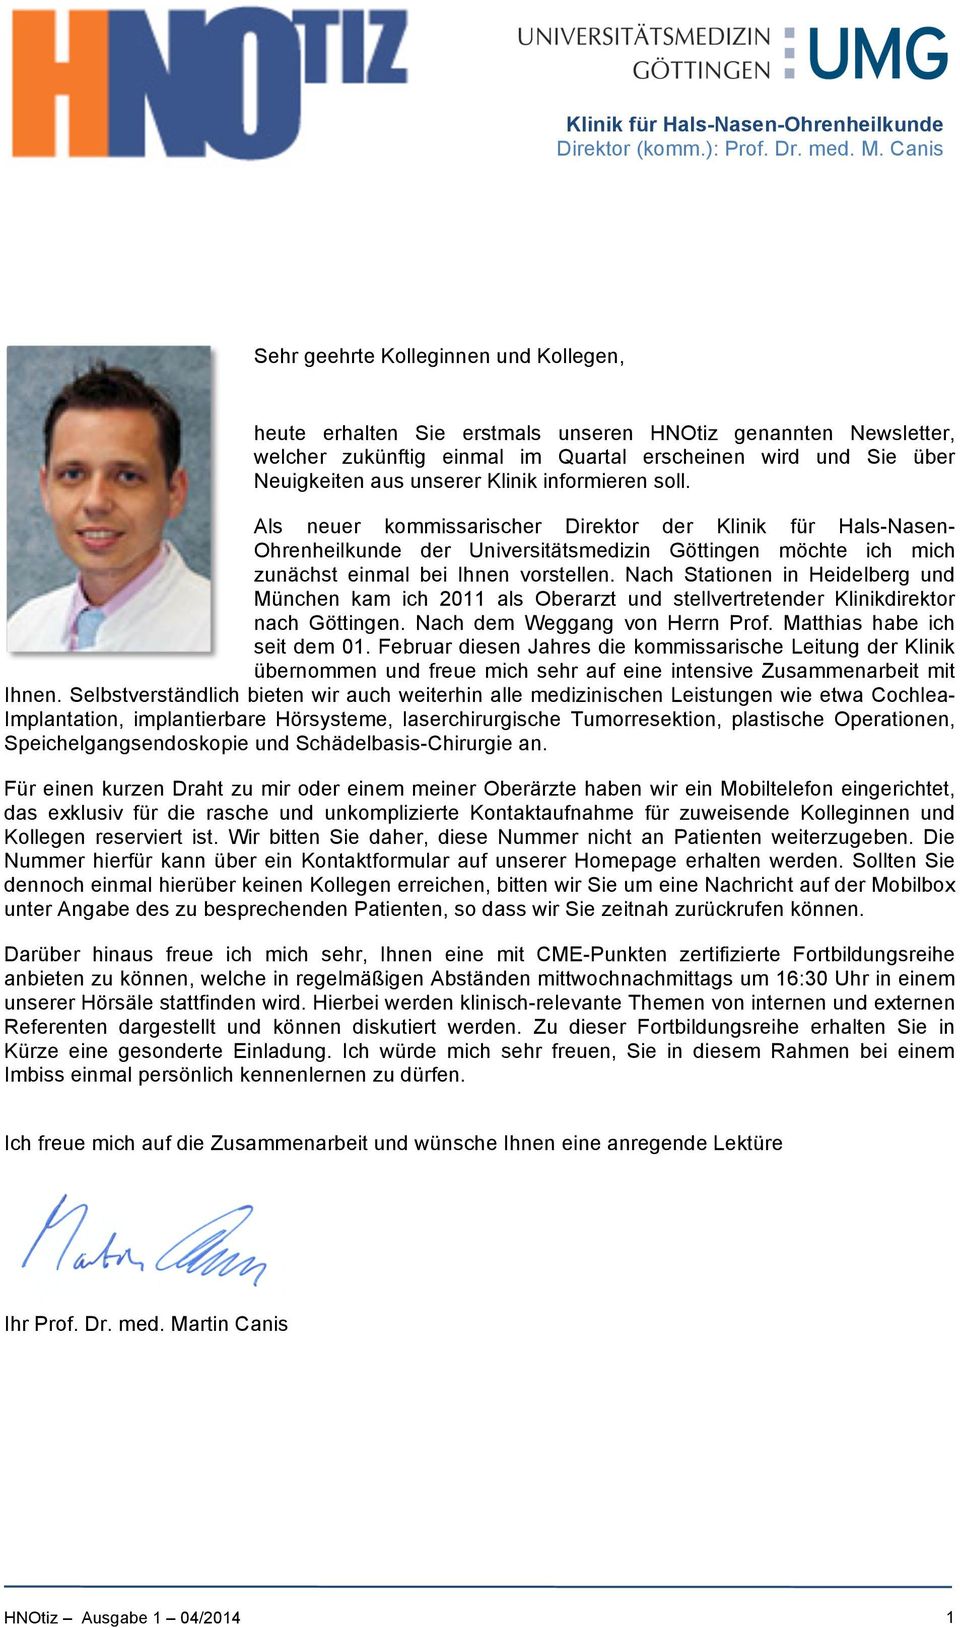 Als neuer kommissarischer Direktor der Klinik für Hals-Nasen- Ohrenheilkunde der Universitätsmedizin Göttingen möchte ich mich zunächst einmal bei Ihnen vorstellen.